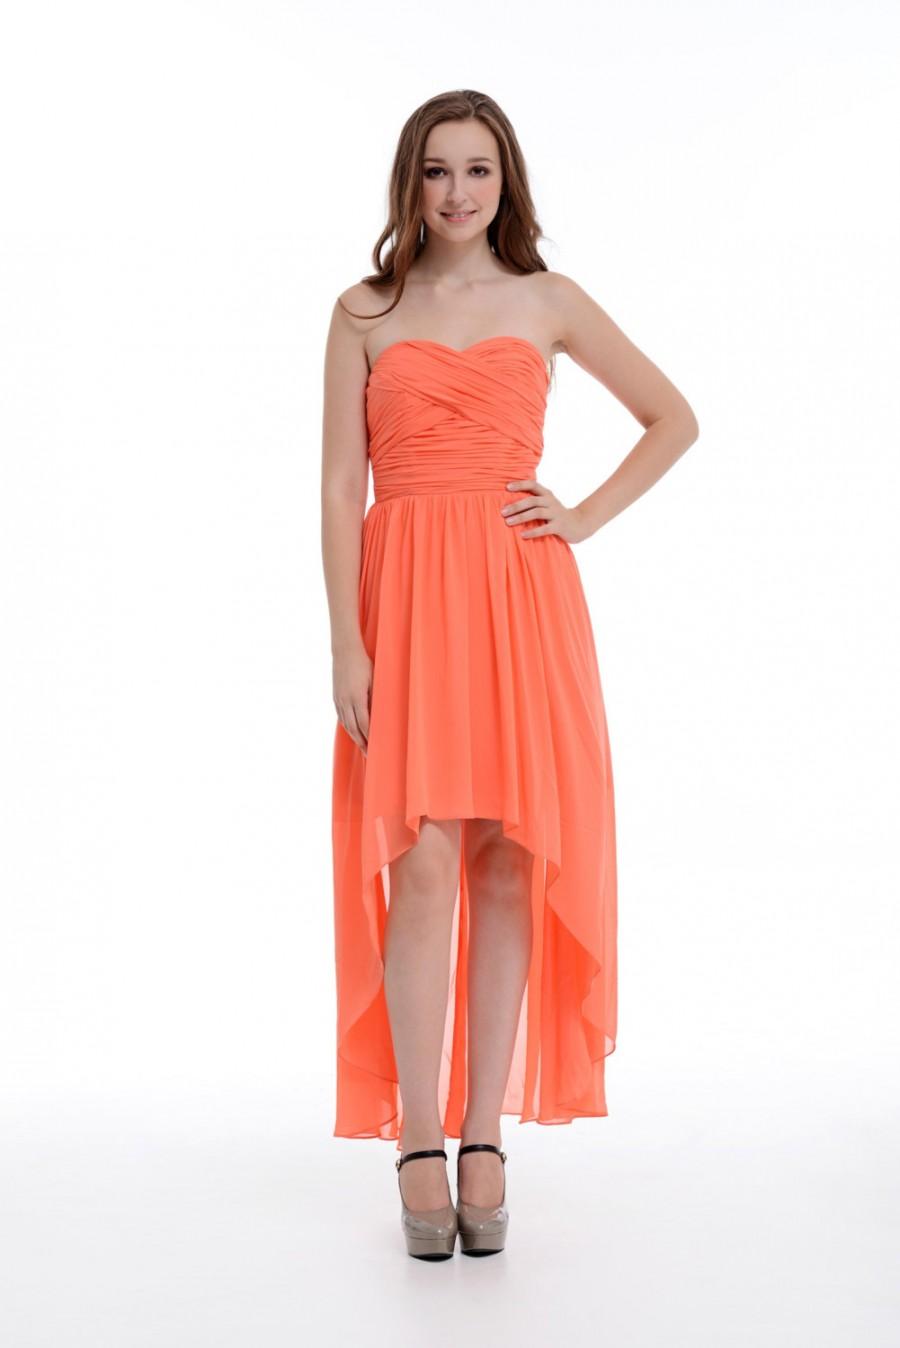 زفاف - Coral High-Low Sweetheart Peach Chiffon Bridesmaid Dress, Asymmetrical Chiffon Dress With Ruffle